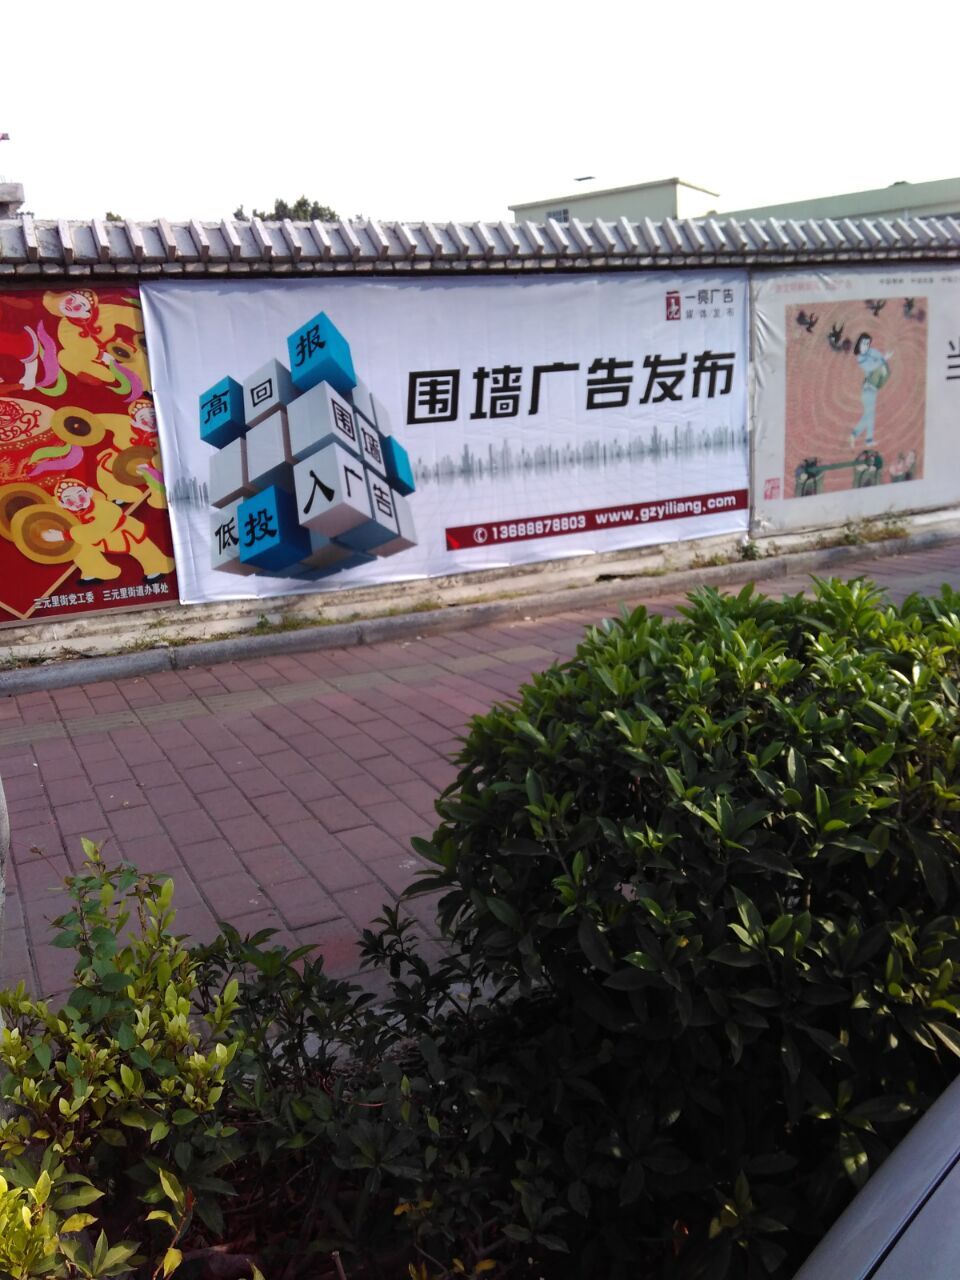 供应广州围墙广告/围墙广告发布/广州